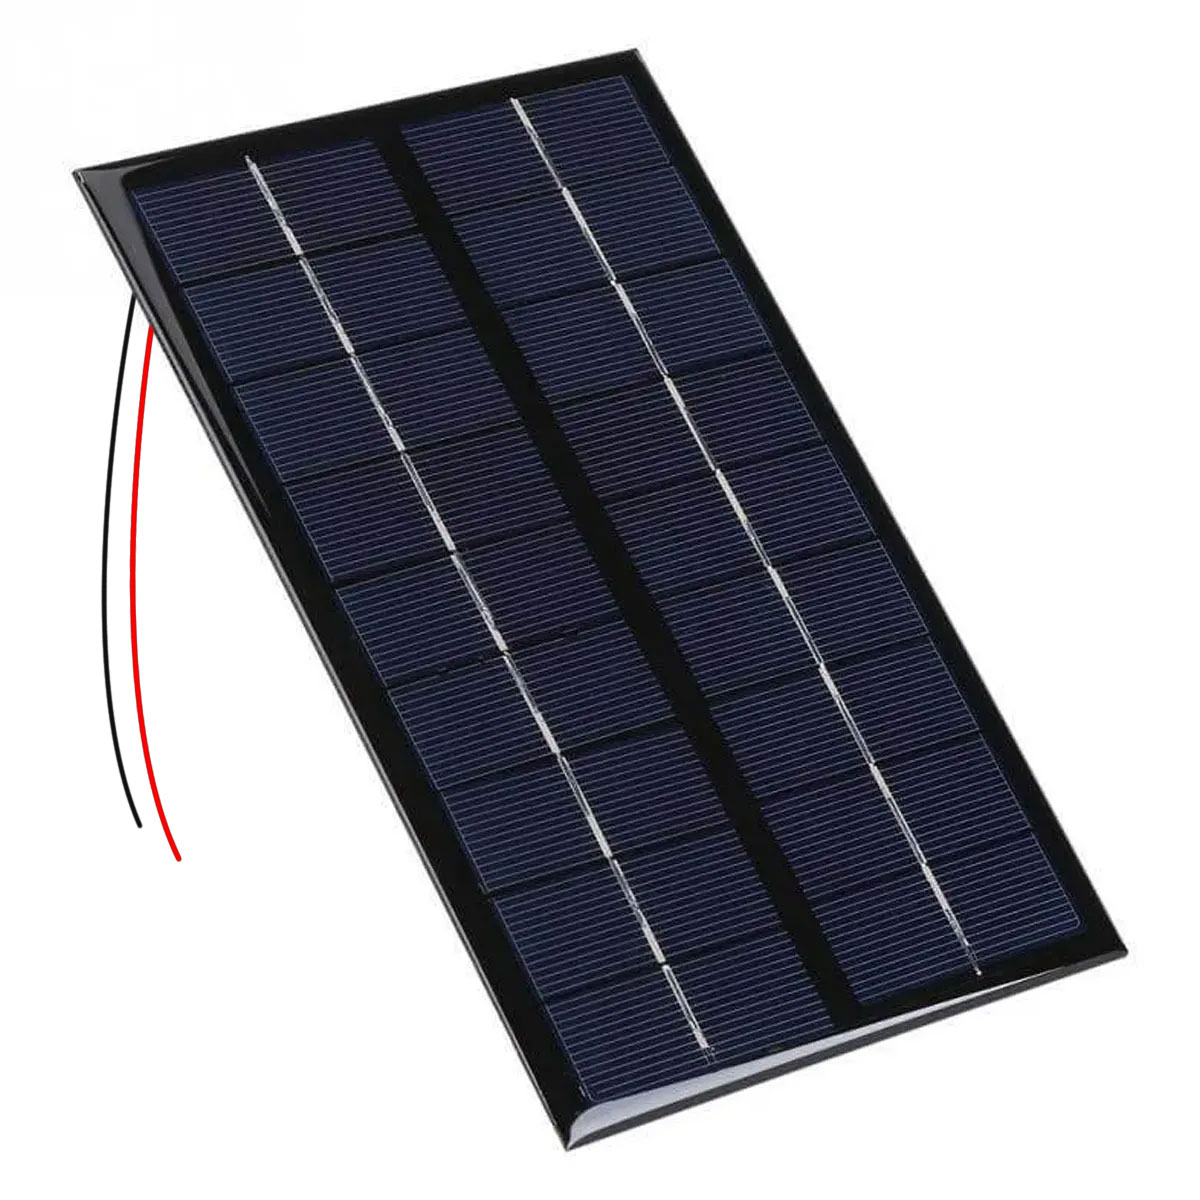 Mini Painel / Placa / Célula de Energia Solar Fotovoltaica 9v 300mA 3w com Fio soldado